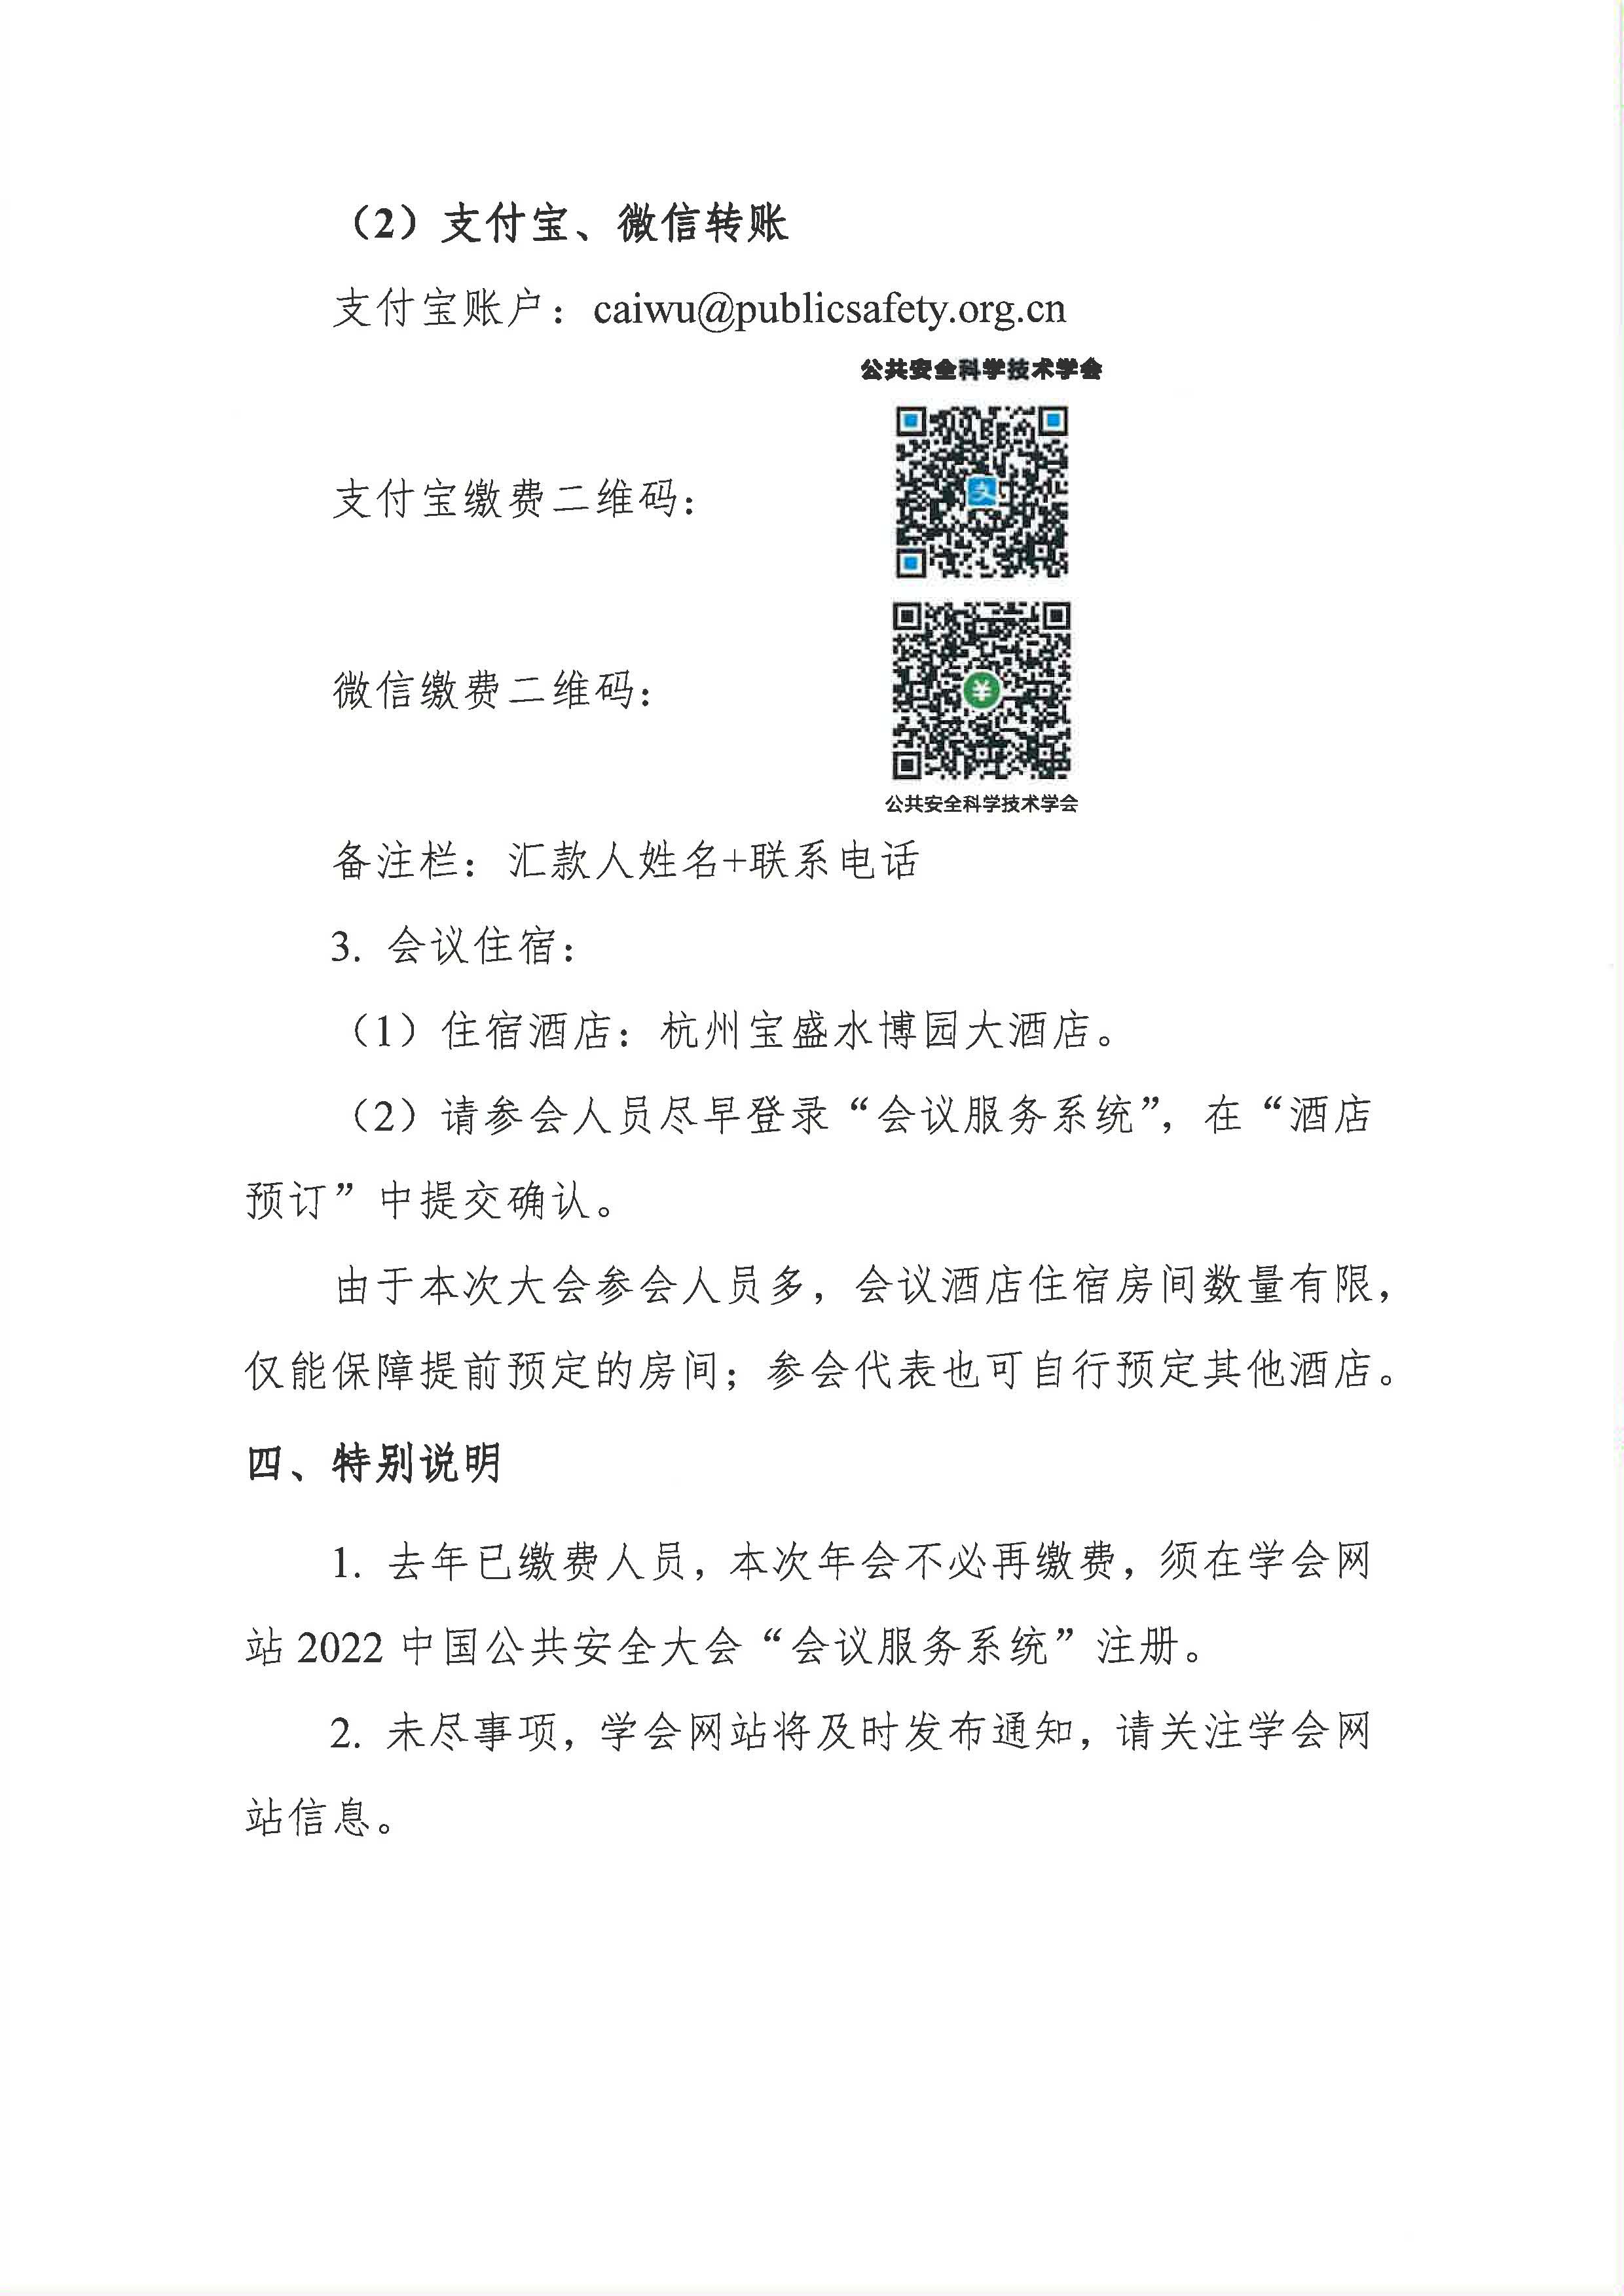 2022中国公共安全大会通知_页面_3.jpg